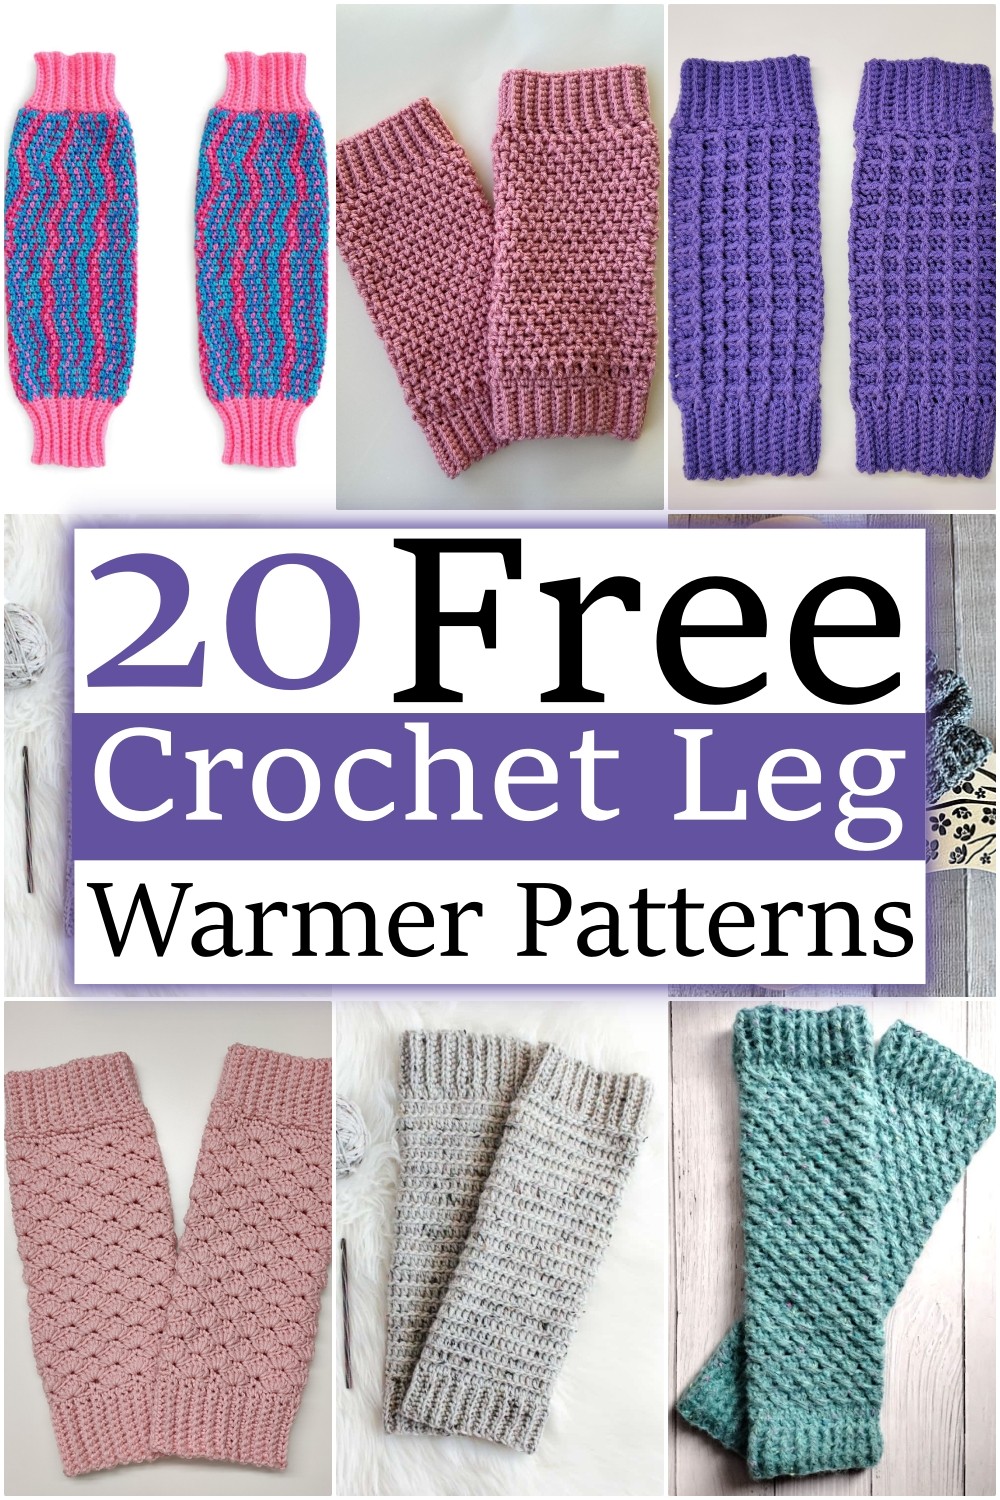 20 Free Crochet Leg Warmer Patterns To Warm Up Winter! - All Crochet Pattern